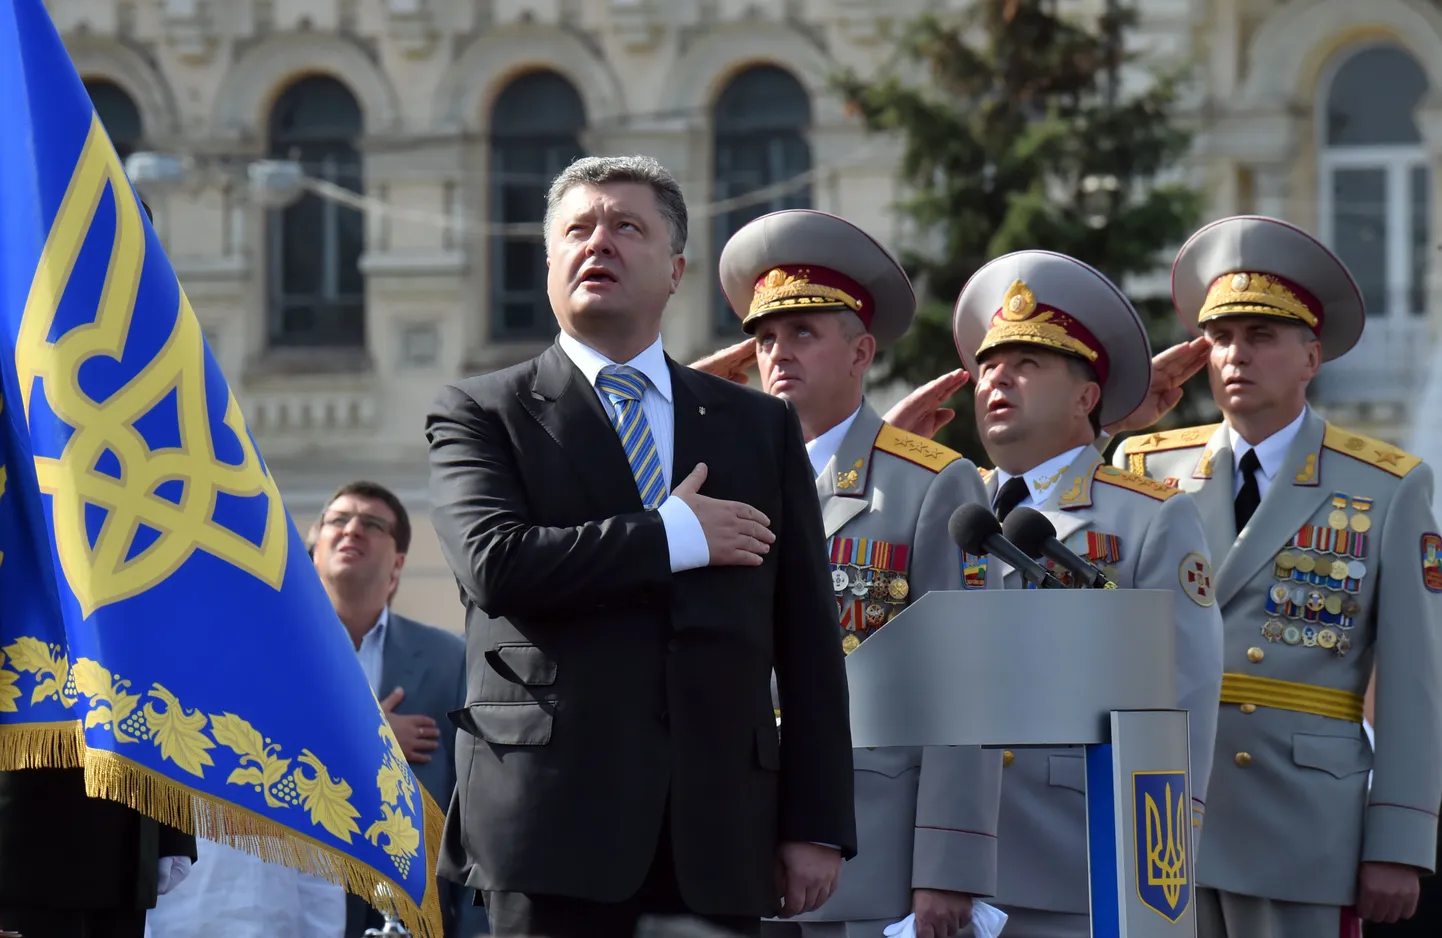 Петр Порошенко во время празднования Дня независимости.